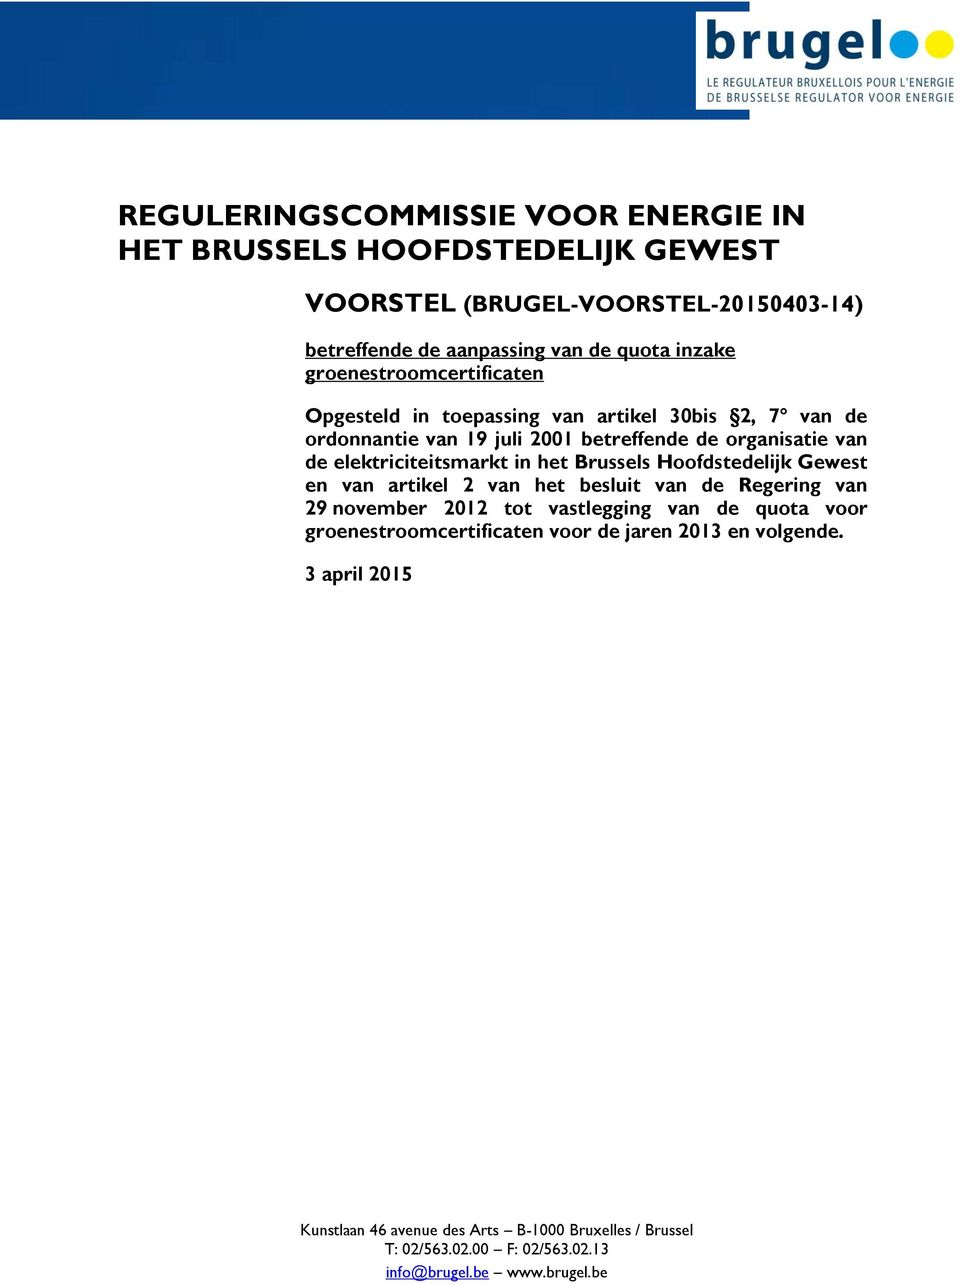 in het Brussels Hoofdstedelijk Gewest en van artikel 2 van het besluit van de Regering van 29 november 2012 tot vastlegging van de quota voor